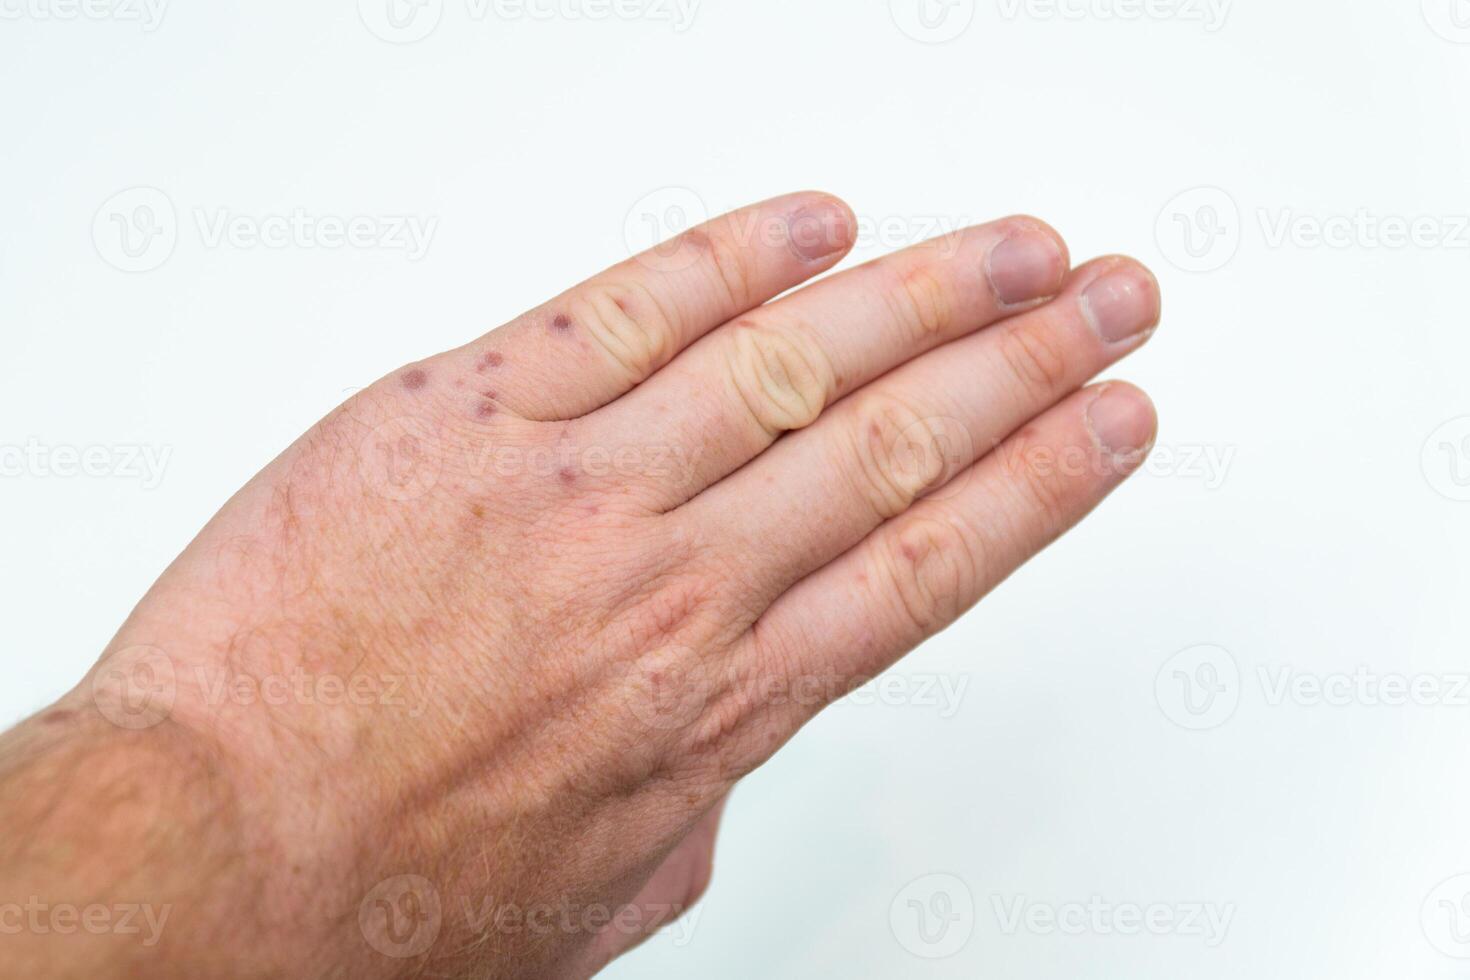 doloroso irritação na pele, vermelho bolhas em uma do homem braço. humano mãos com dermatite, alergia irritação na pele. enterovírus. coxsackie vírus. alérgico erupção cutânea em a mãos do a adulto homem foto